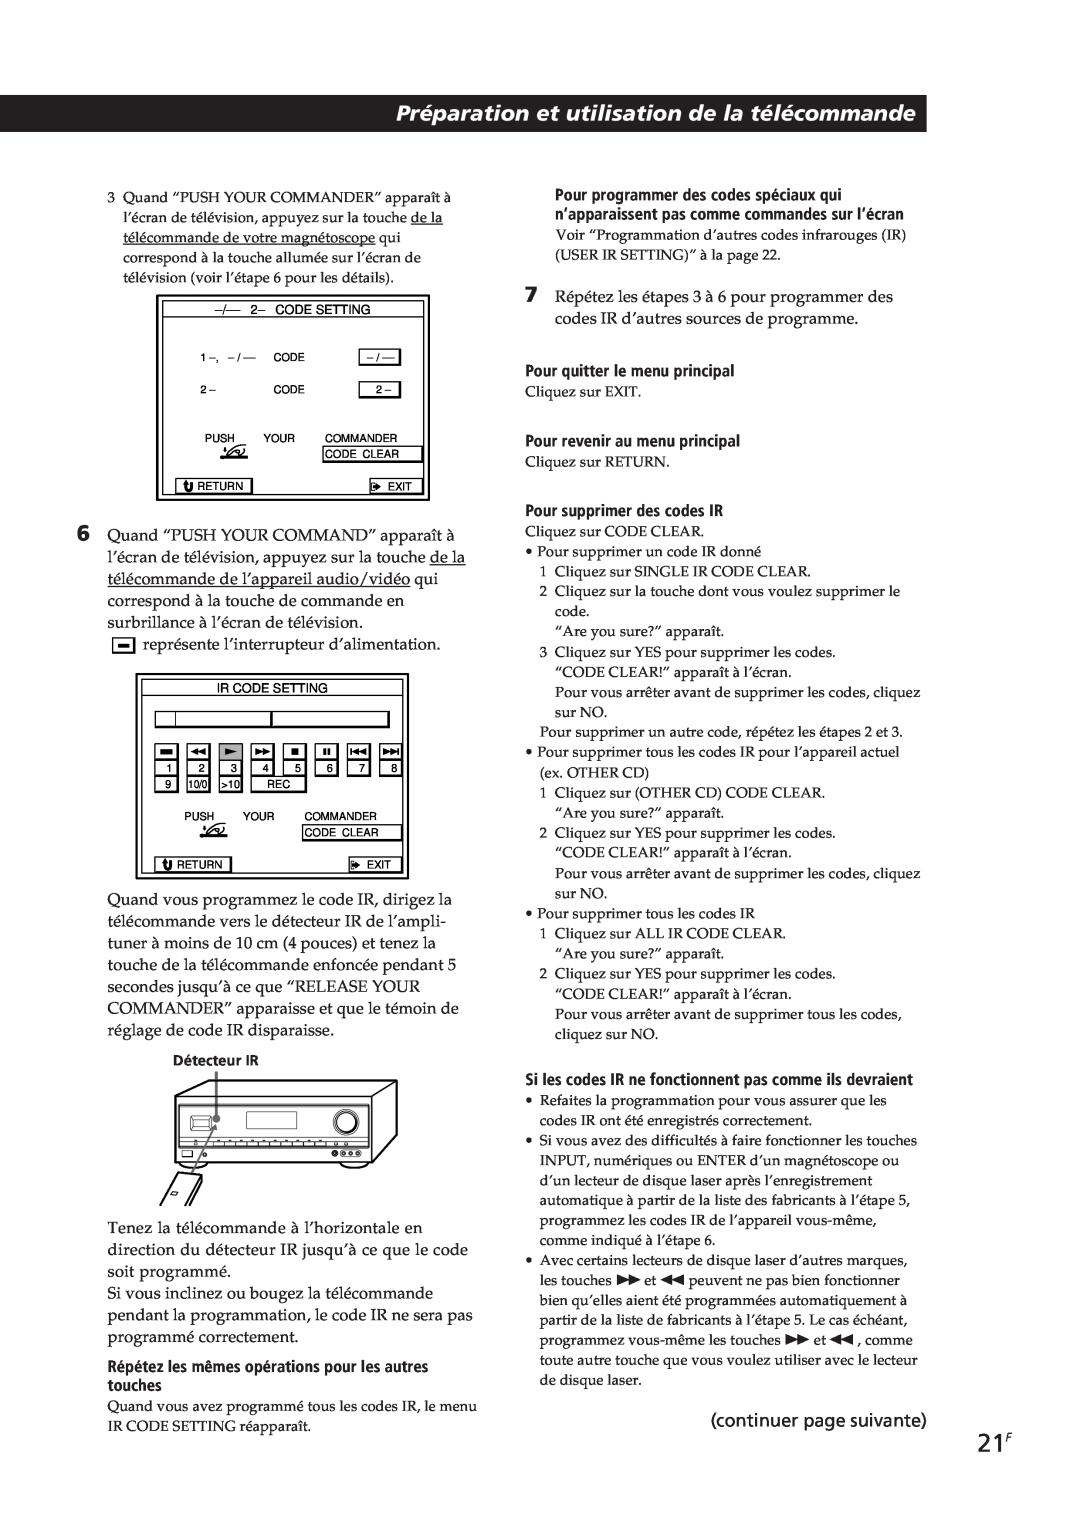 Sony STR-DE805G Préparation et utilisation de la télécommande, continuer page suivante, Pour quitter le menu principal 